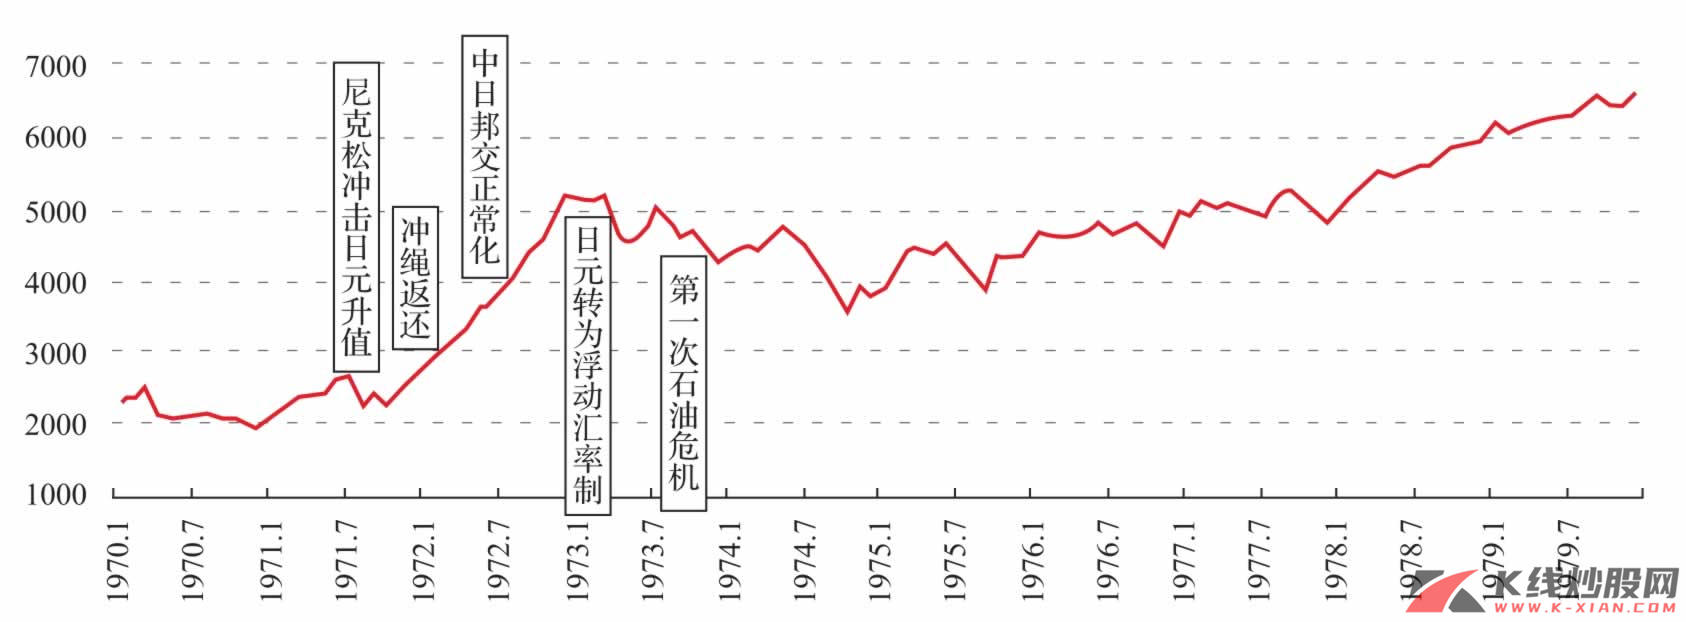 日本20世纪70年代前期股市走势